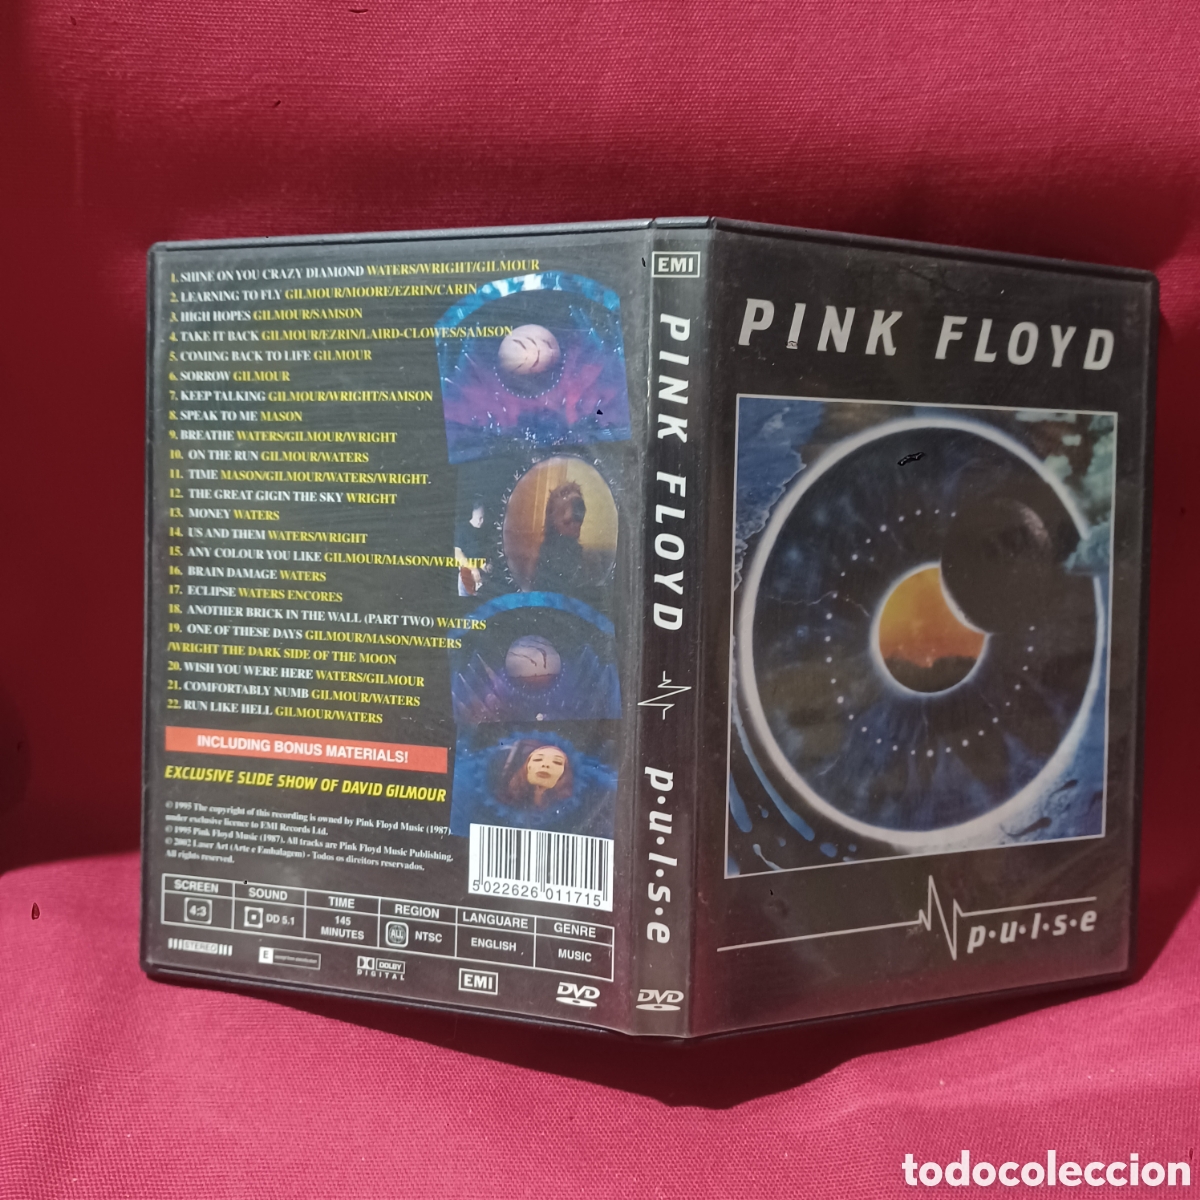 Pulse - Pink Floyd: : Musik